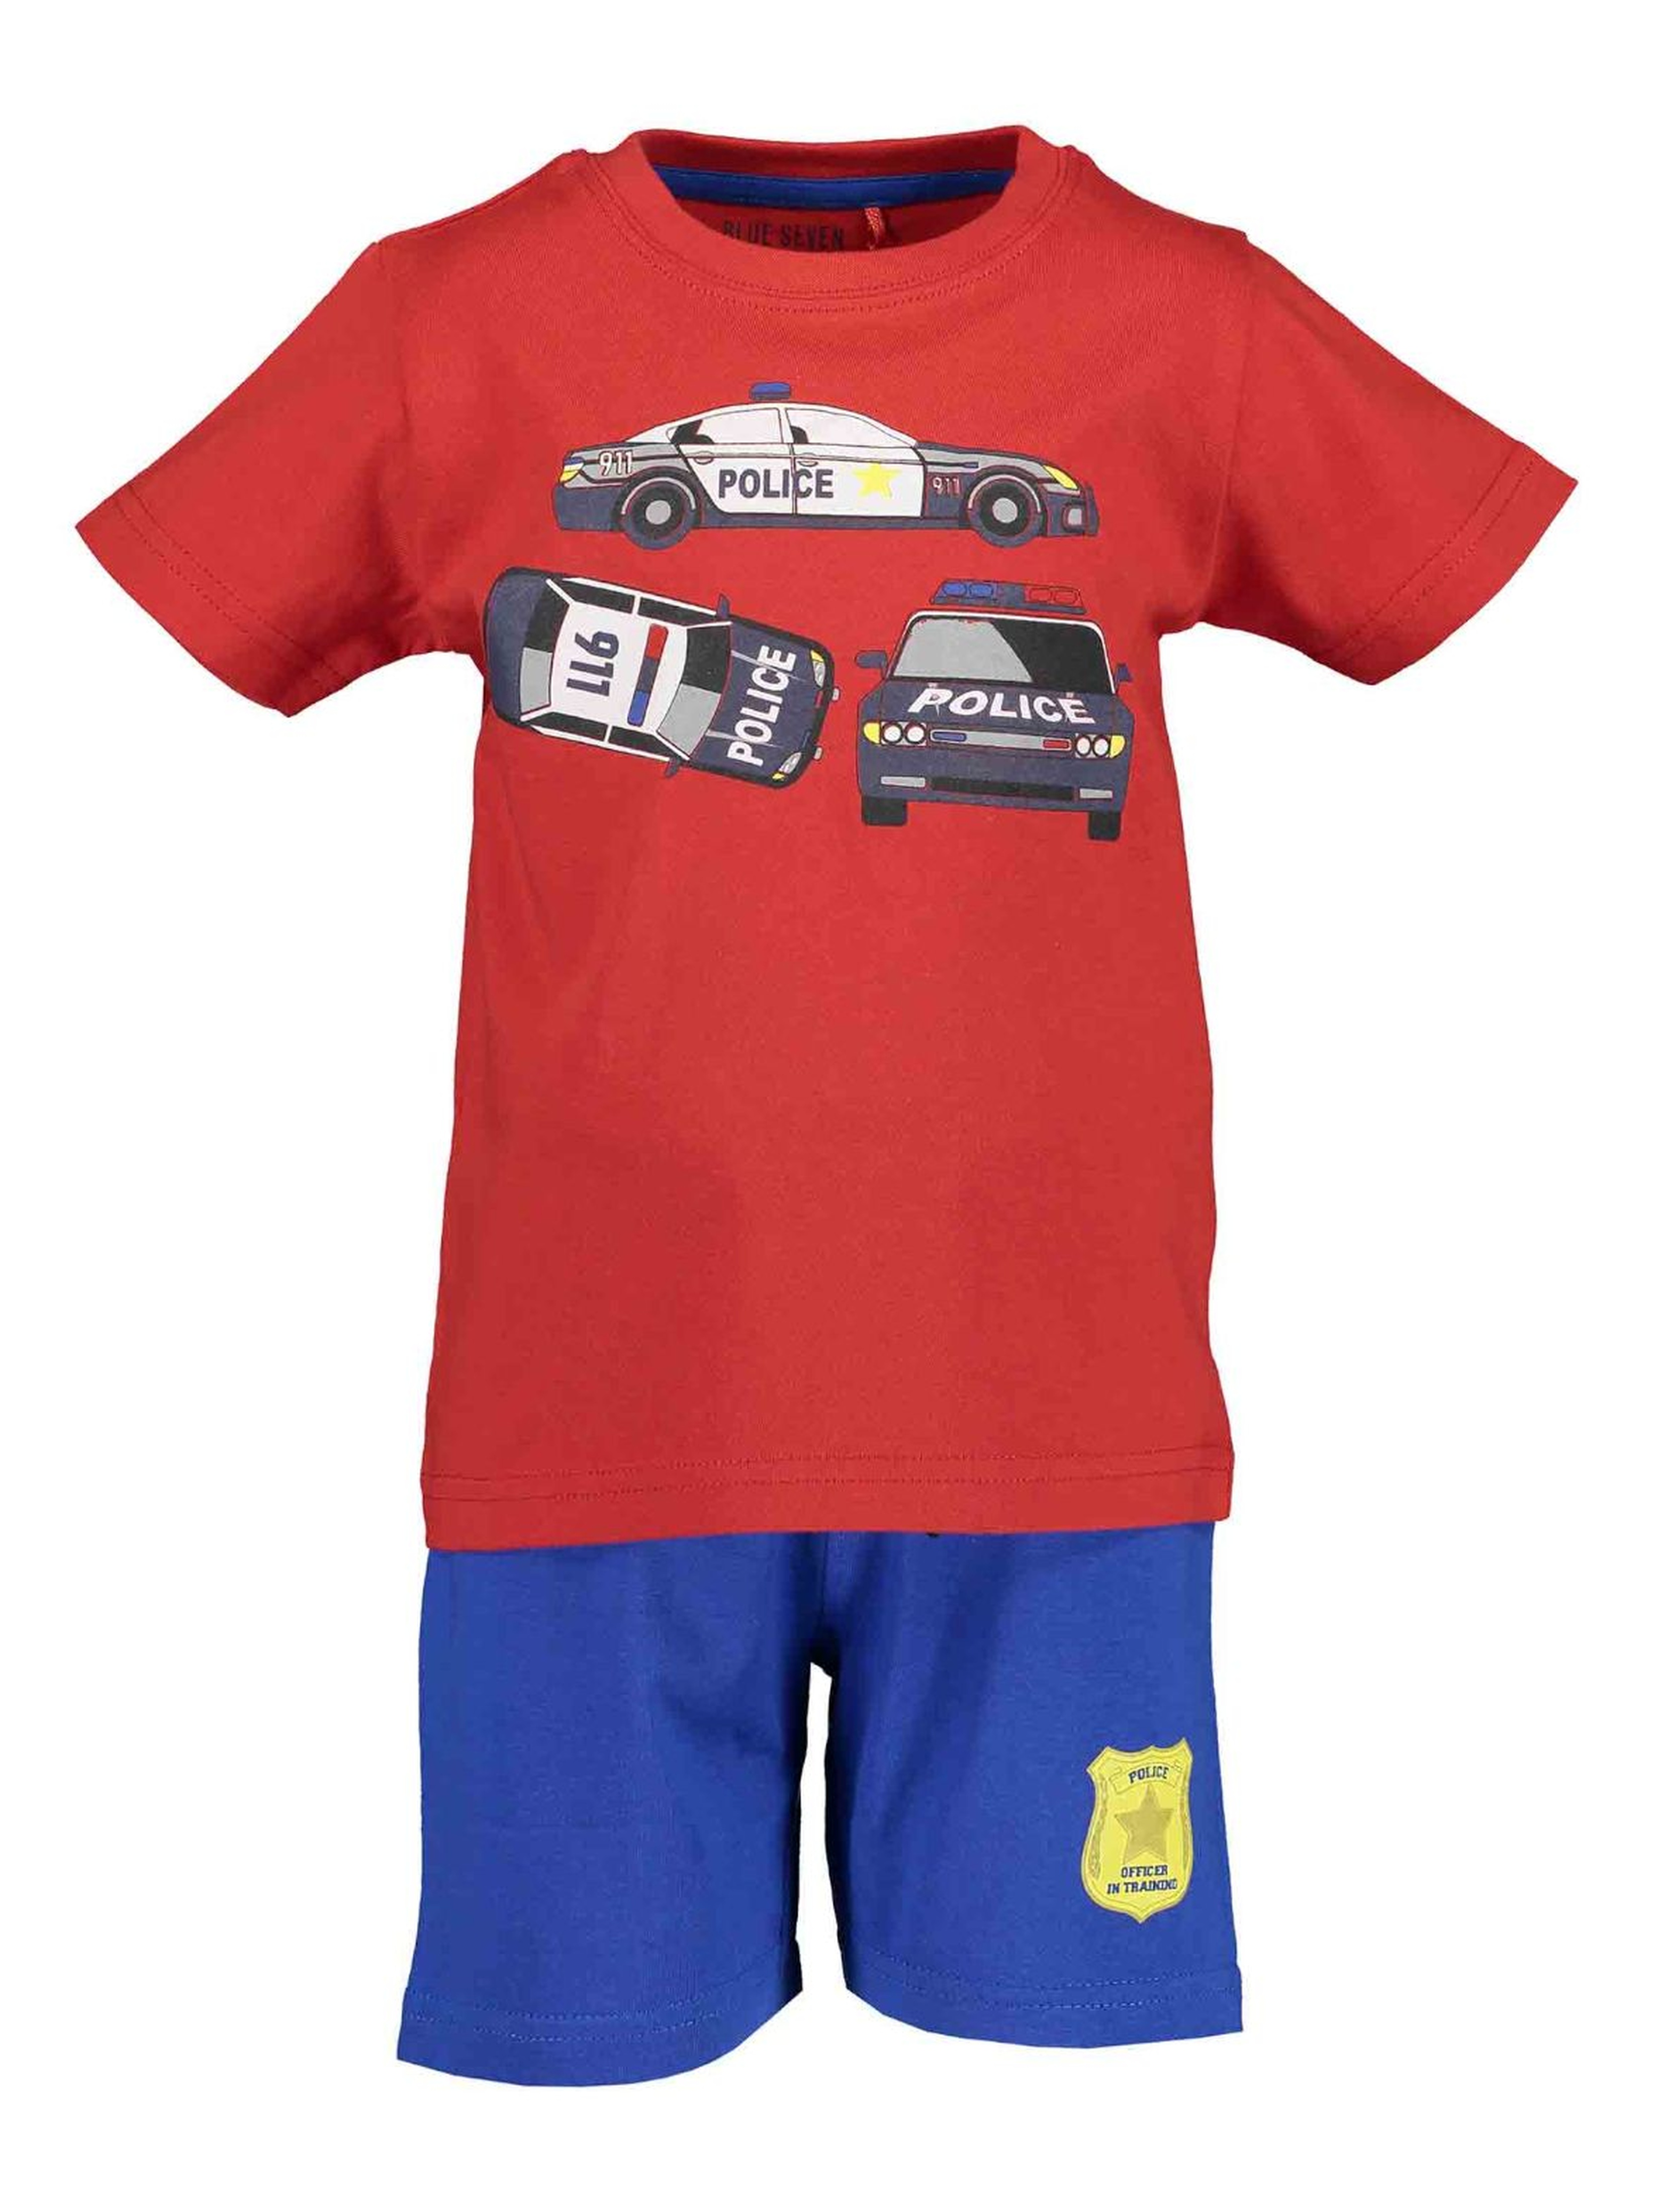 Komplet chłopięcy Police - czerwony t-shirt i niebieskie spodenki